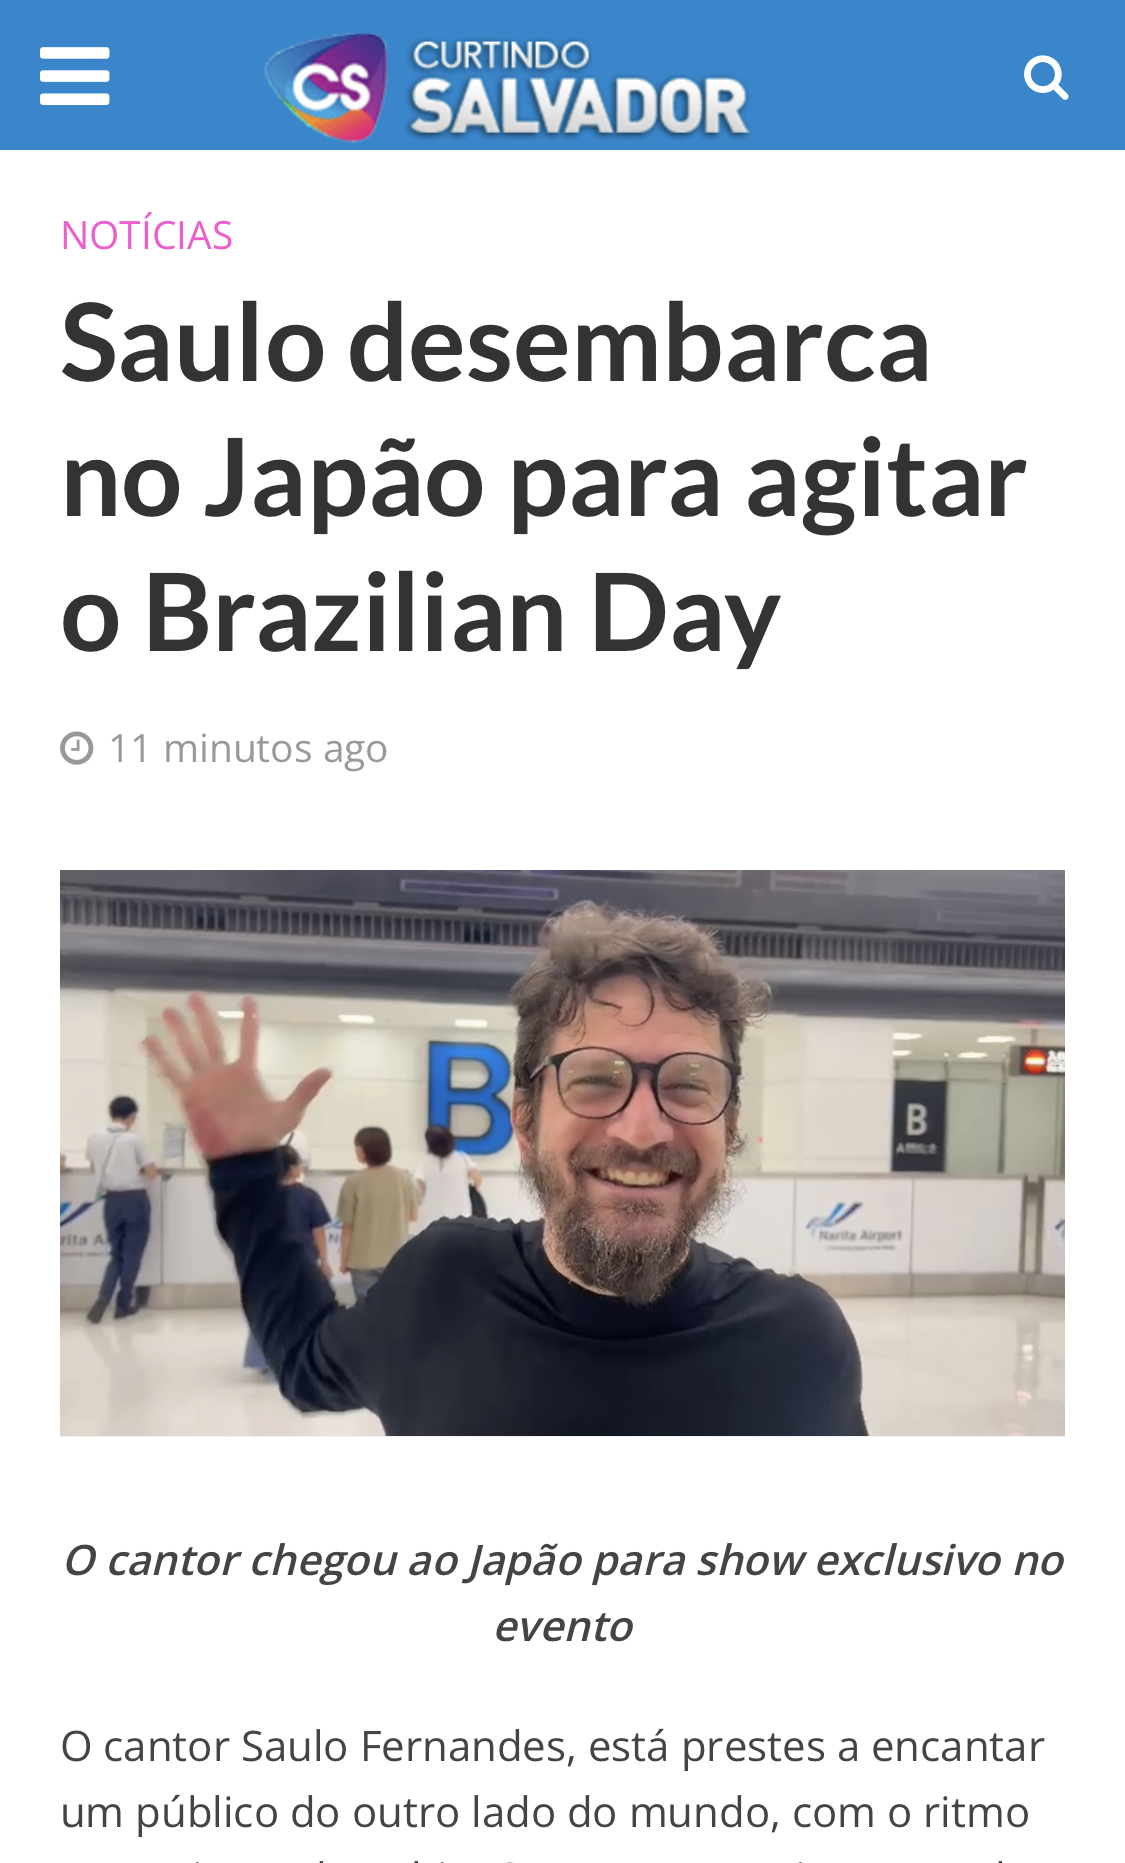 CURTINDO SALVADOR - Saulo desembarca no Japão para agitar o Brazilian Day